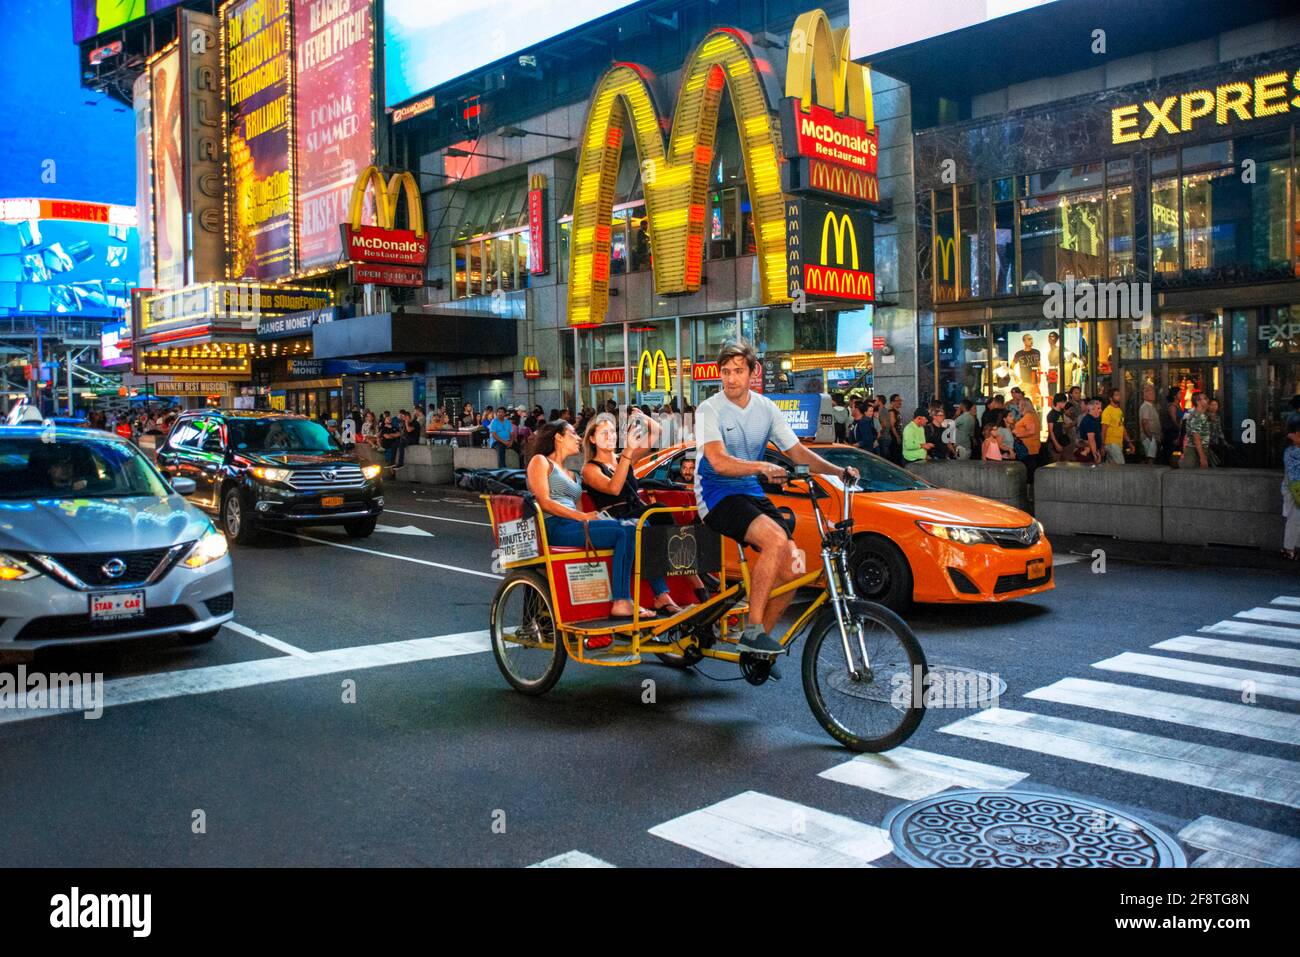 McDonald's fast foot restaurant situé à Manhattan dans Times Square au coeur de Big Apple. Des taxis Pedicobs sont disponibles sur Broadway, très fréquentée, en face de la rue Banque D'Images